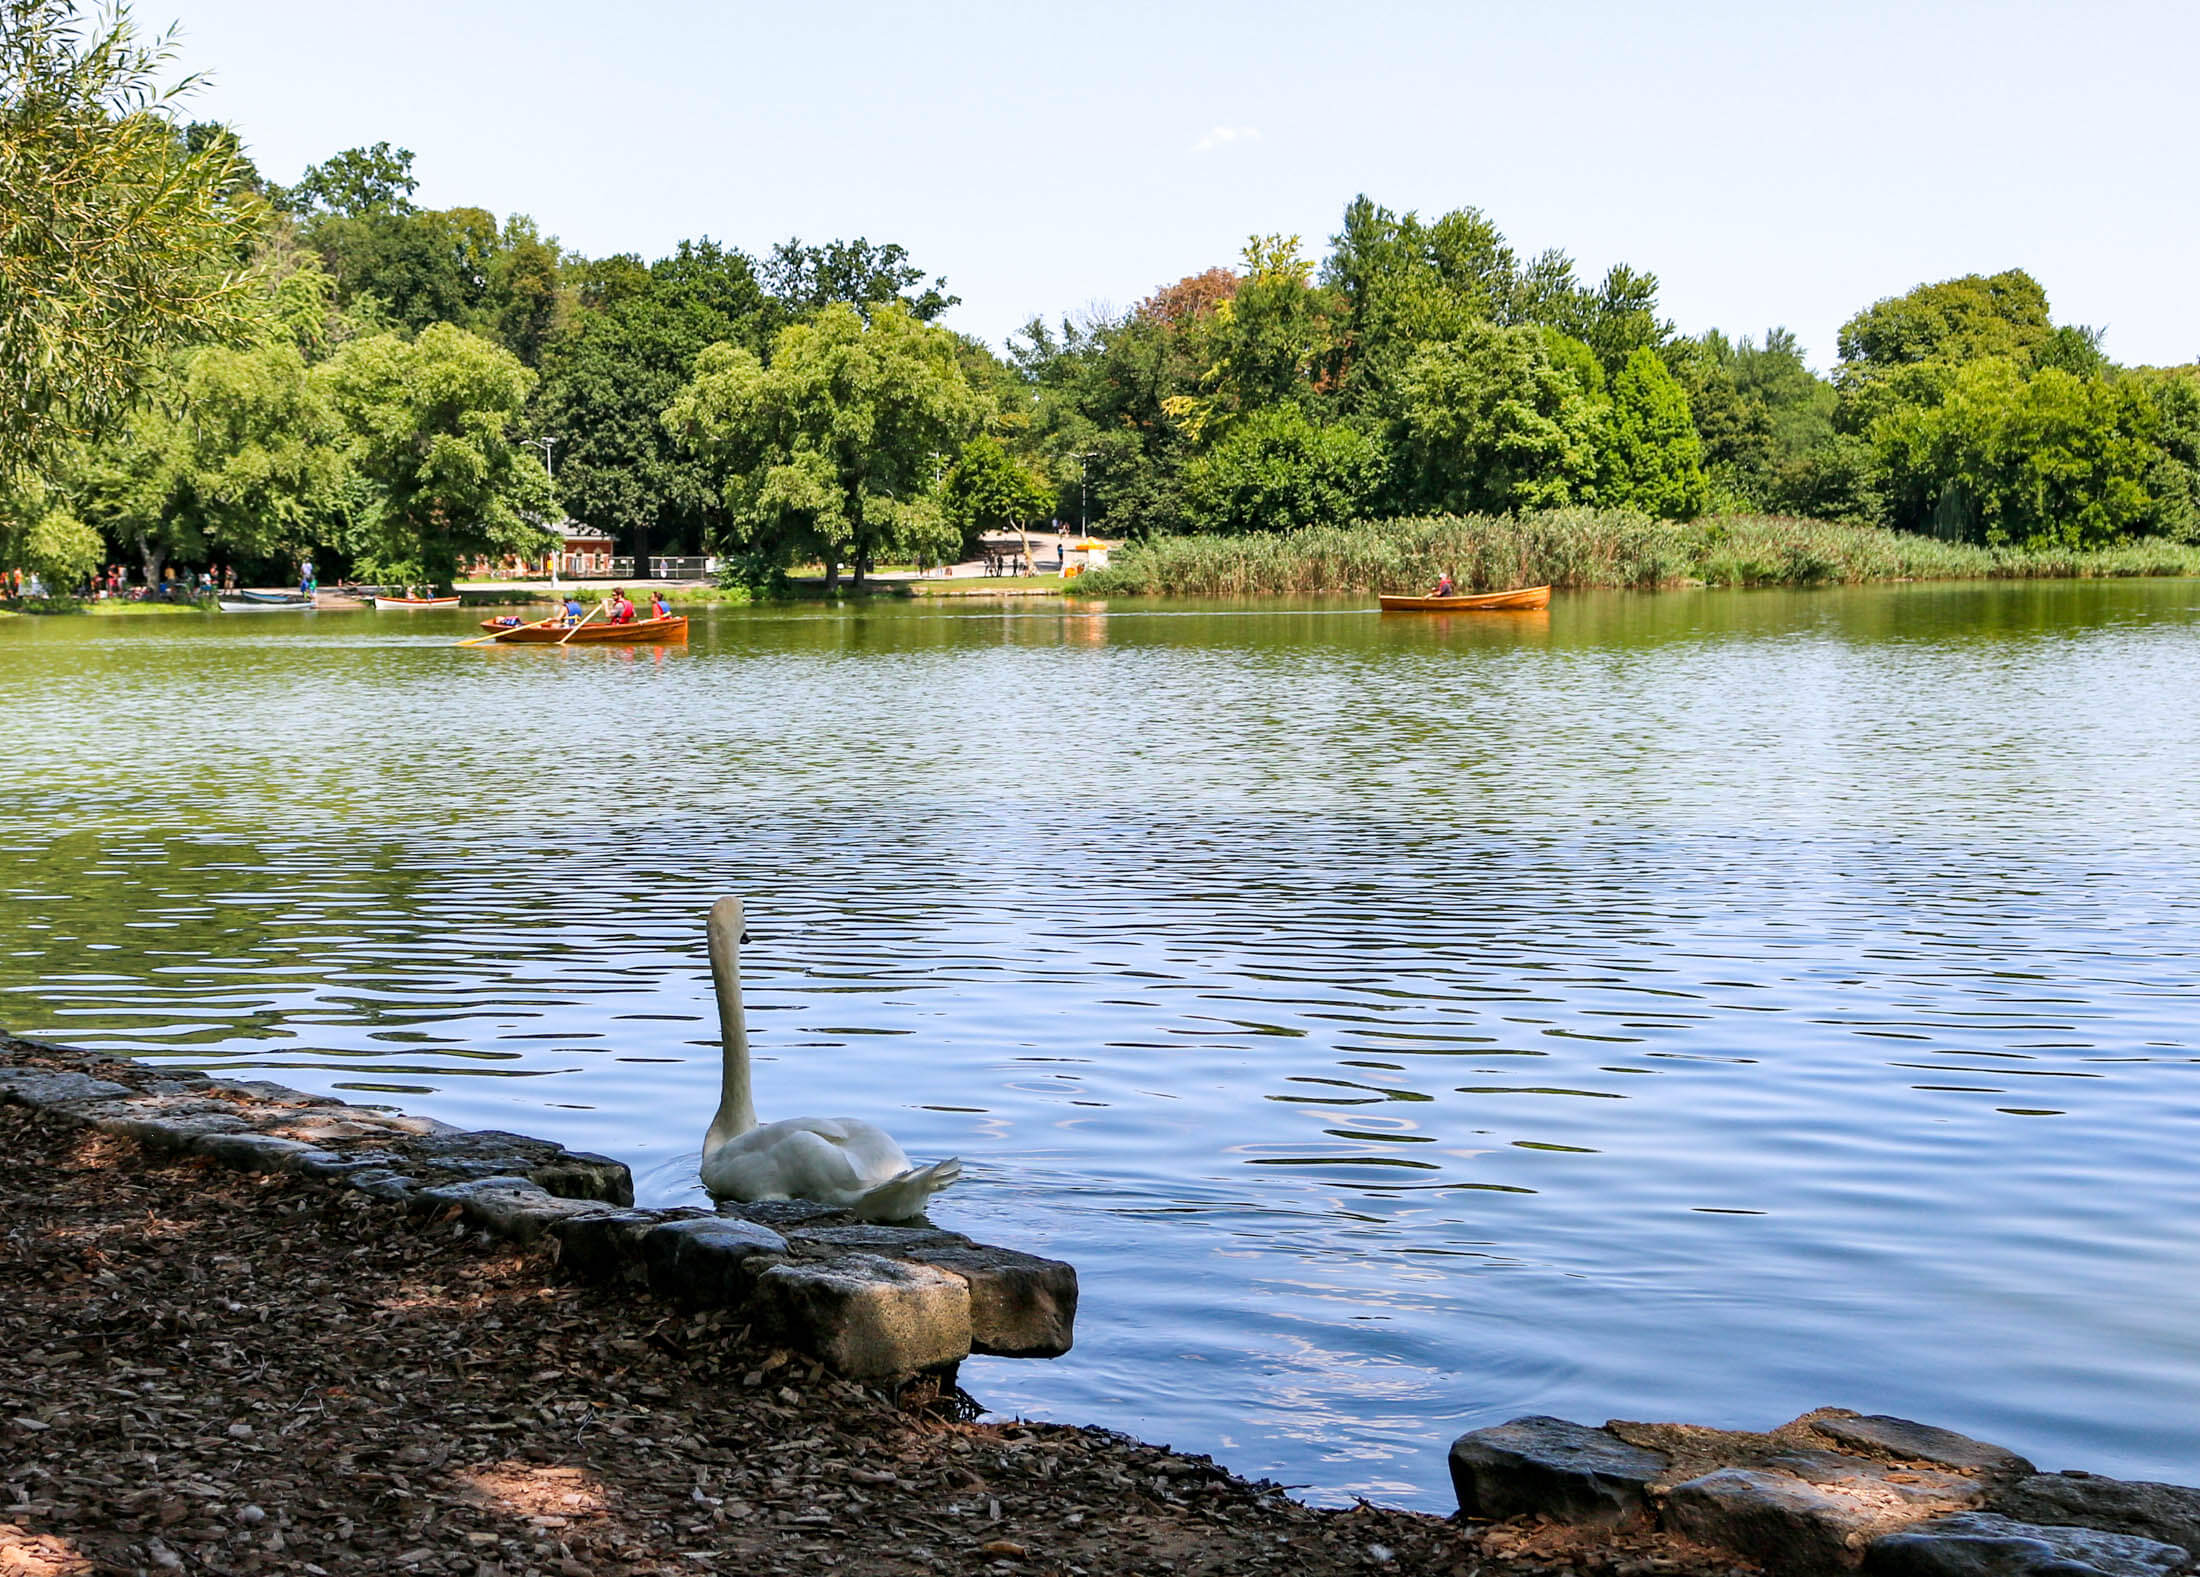 swan at the lake